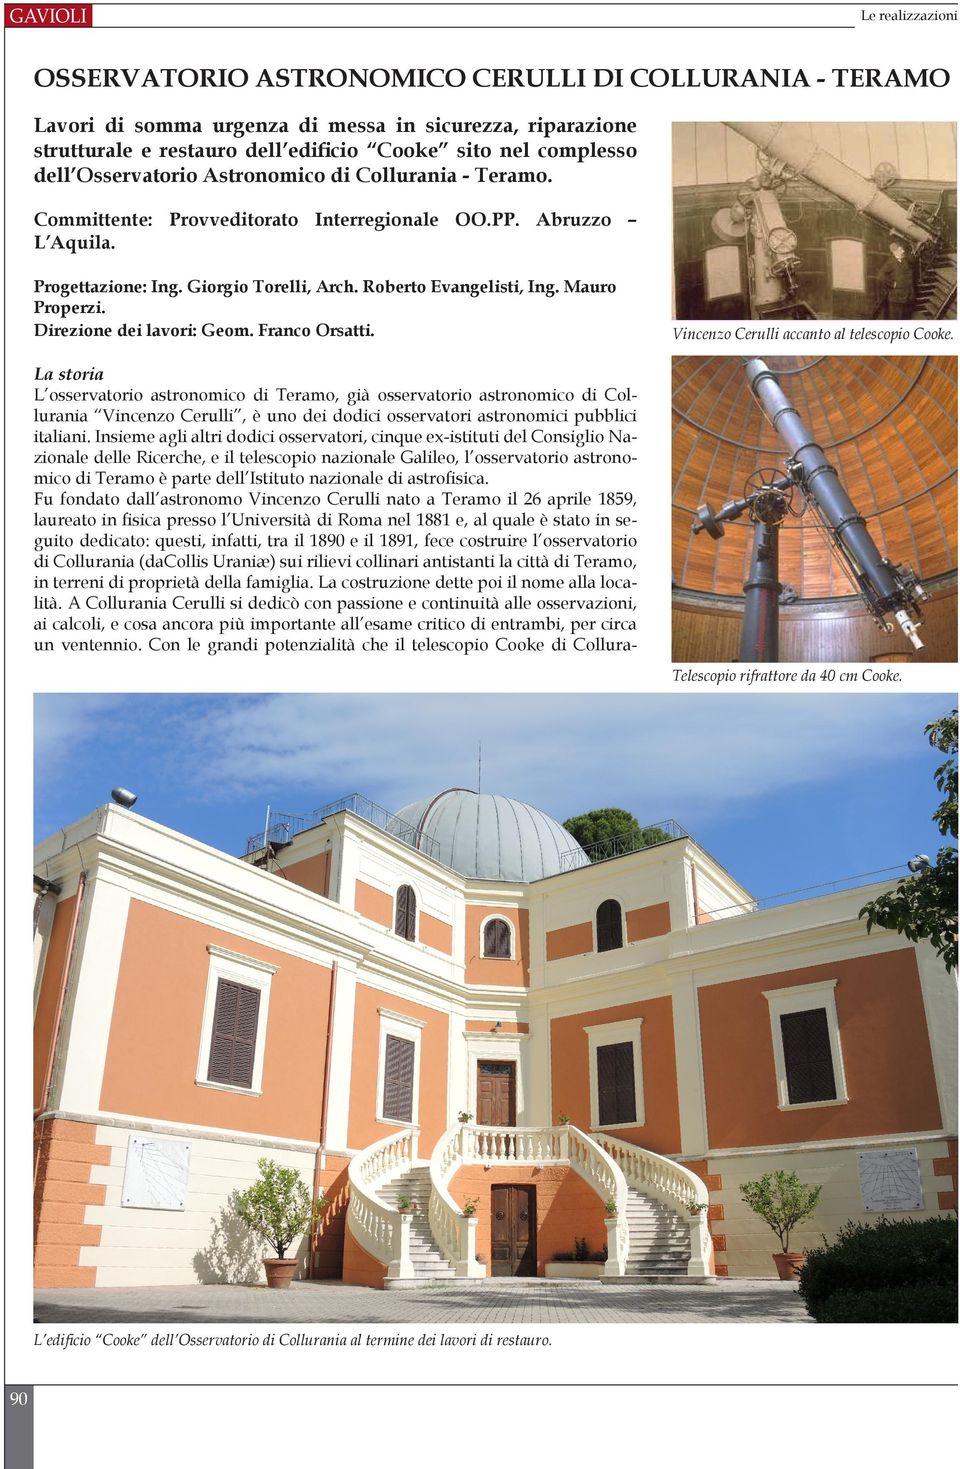 Mauro Properzi. Direzione dei lavori: Geom. Franco Orsatti. Vincenzo Cerulli accanto al telescopio Cooke.